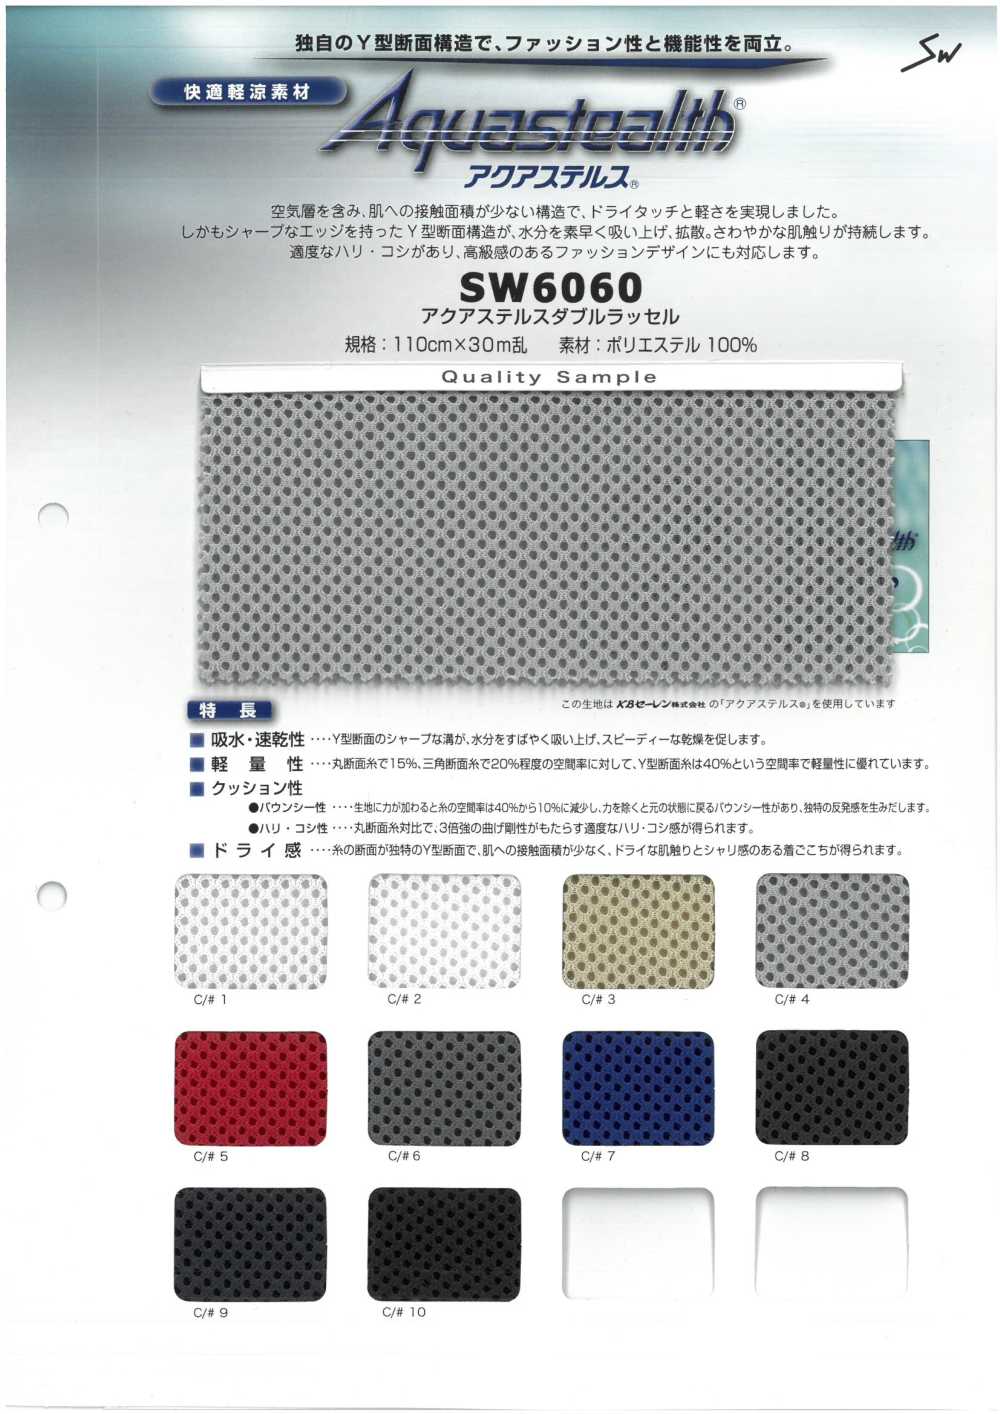 SW6060 Absorção De água E Secagem Rápida W Raschel[Têxtil / Tecido] Fibras Sanwa